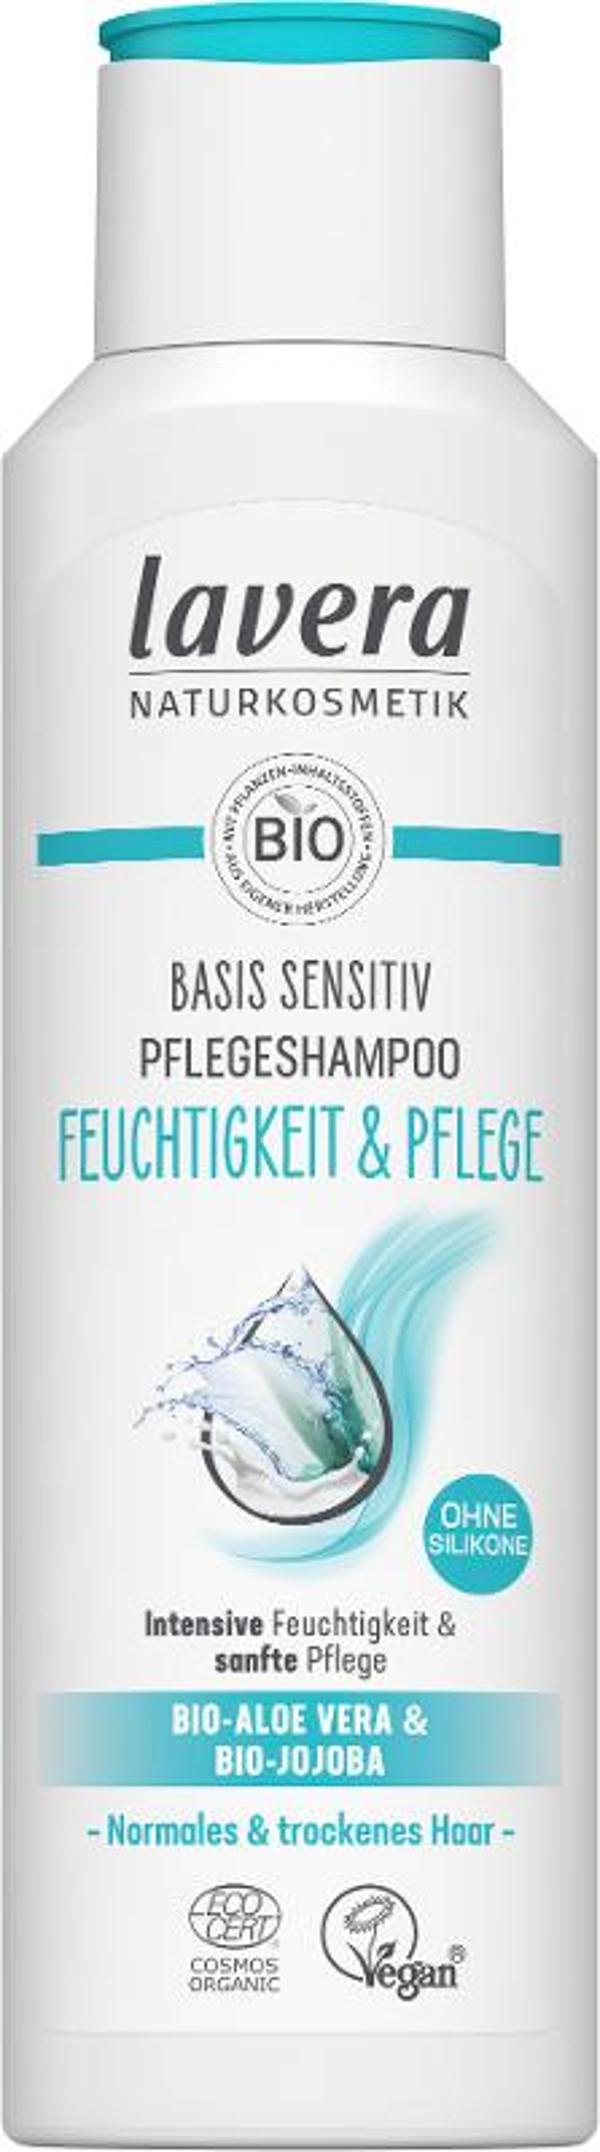 Produktfoto zu Pflegeshampoo basis sensitv Feuchtigkeit & Pflege